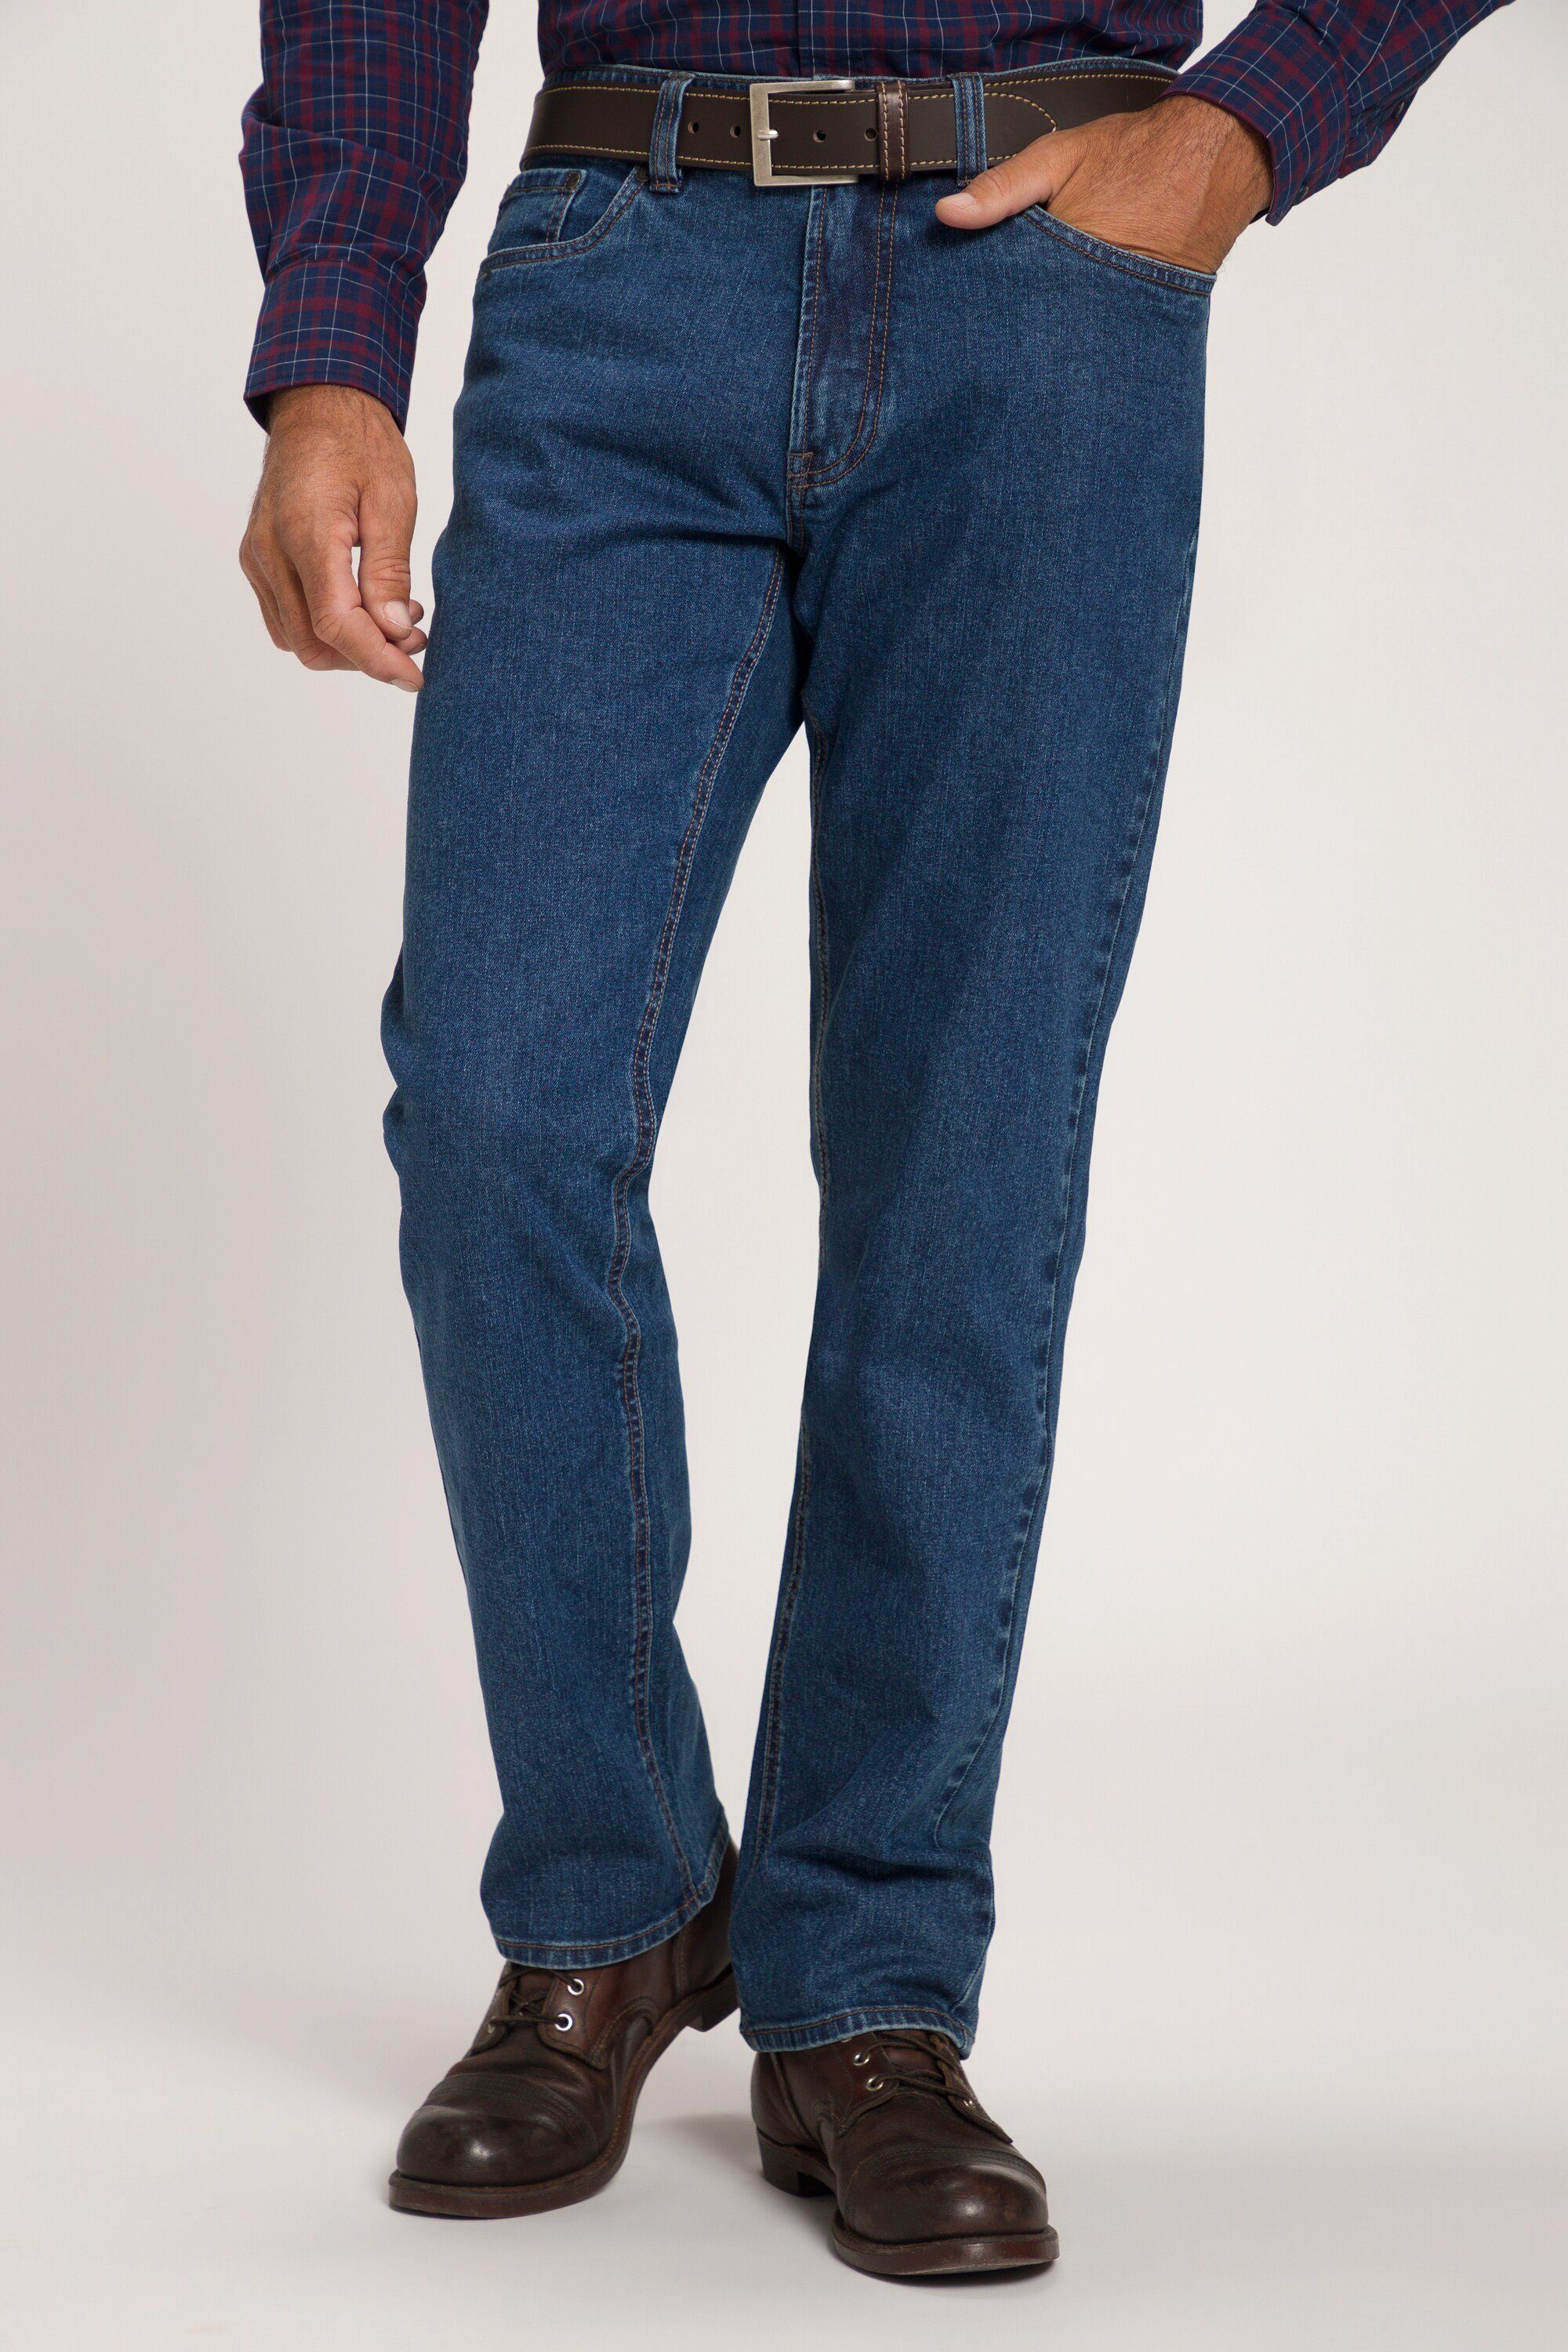 JP1880 Cargohose Jeans 5-Pocket Regular Fit bis Gr. 70/35 blue denim